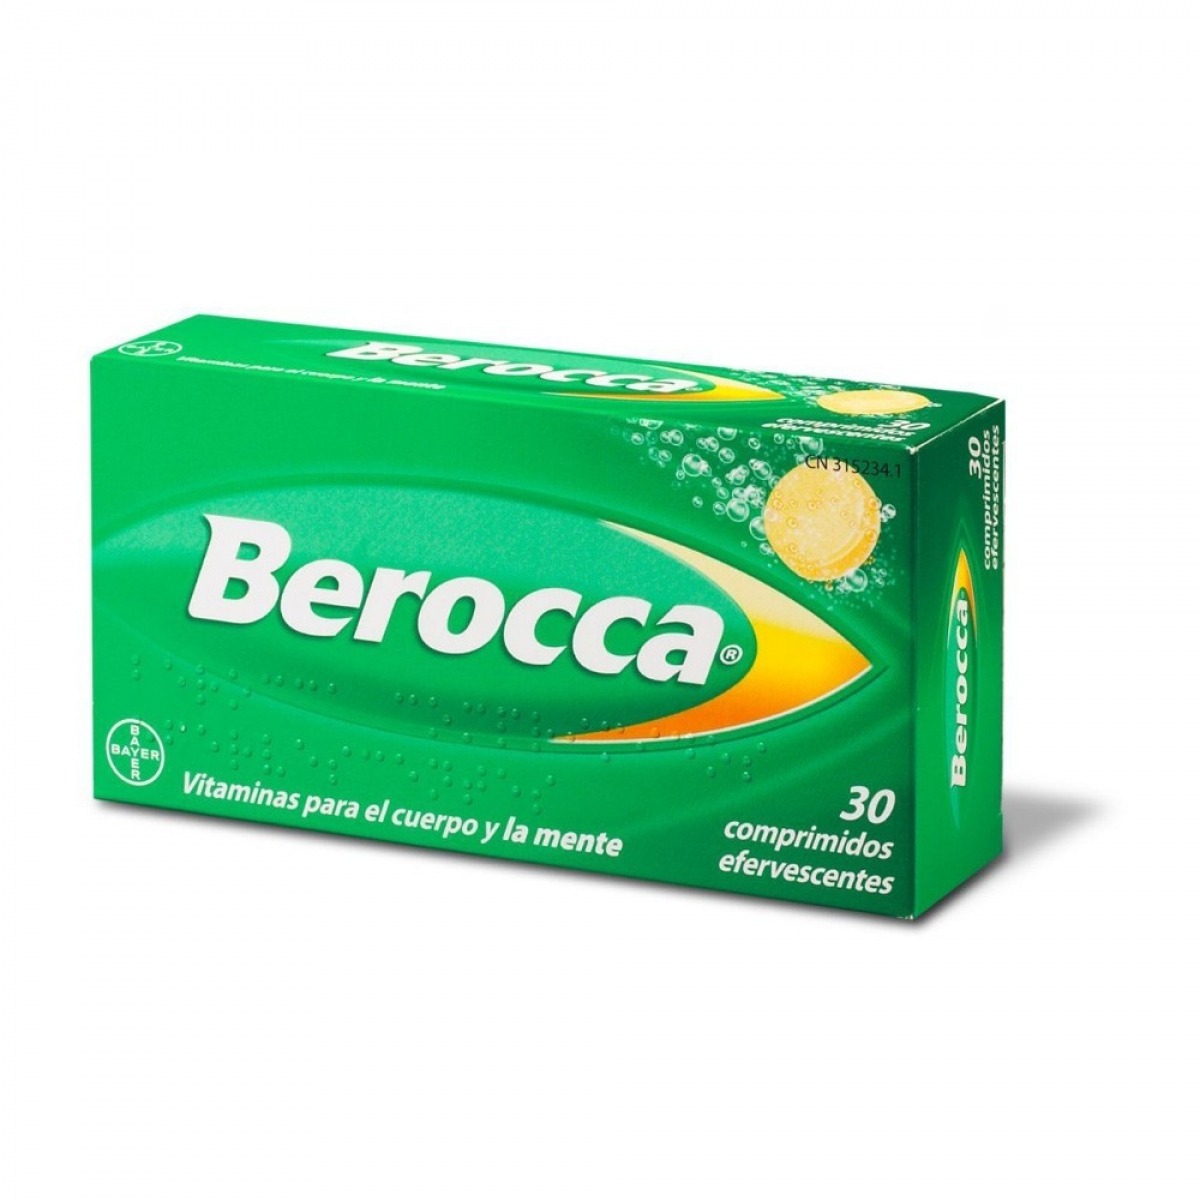 BEROCCA30COMPRIMIDOS I1